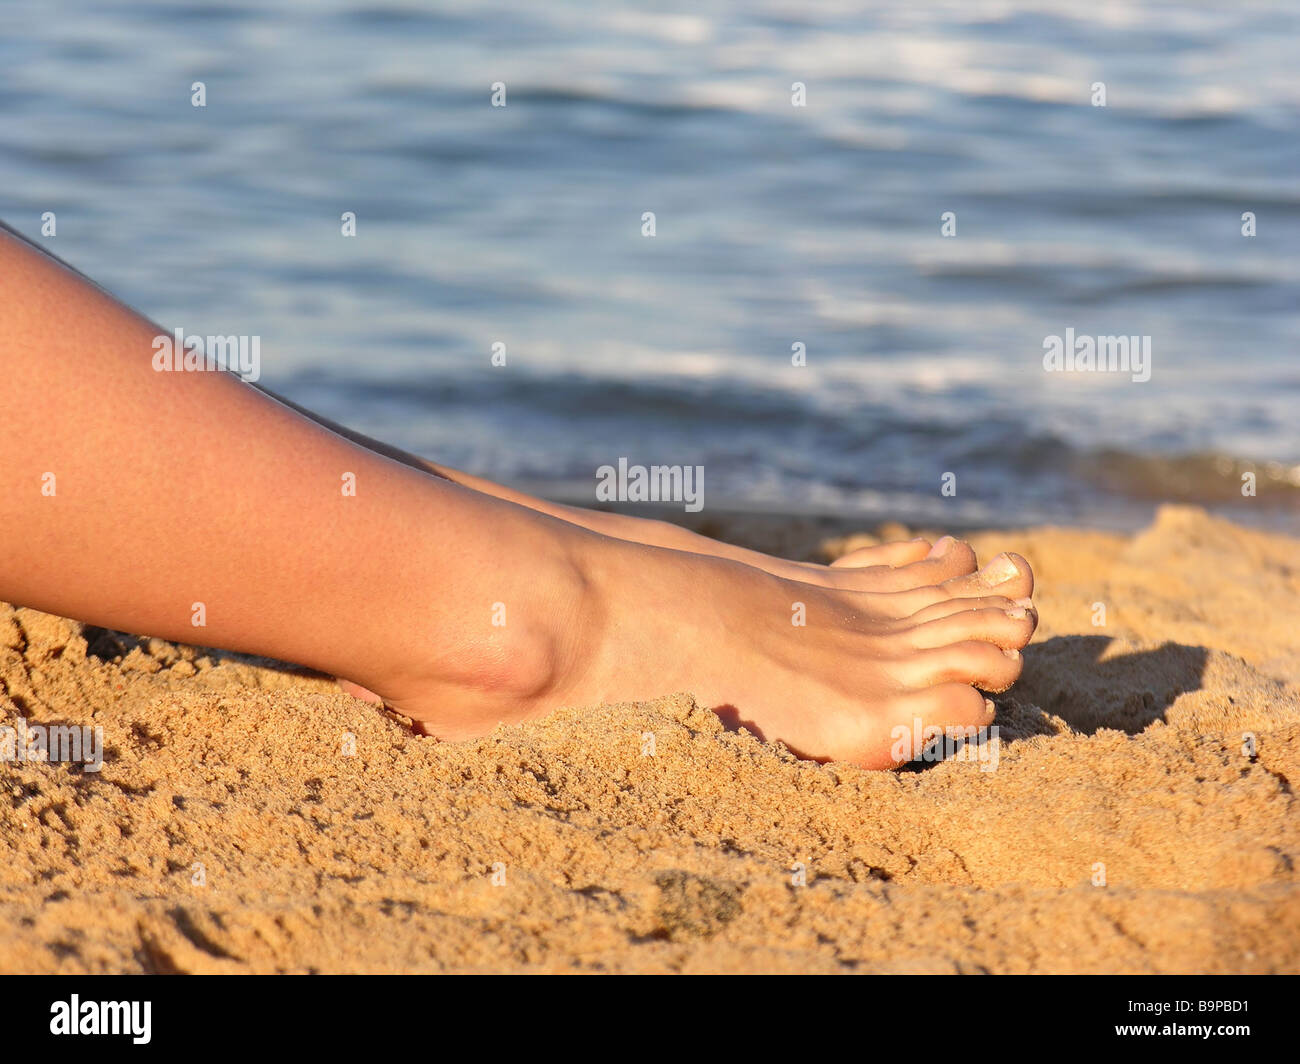 на пляже женские ножки